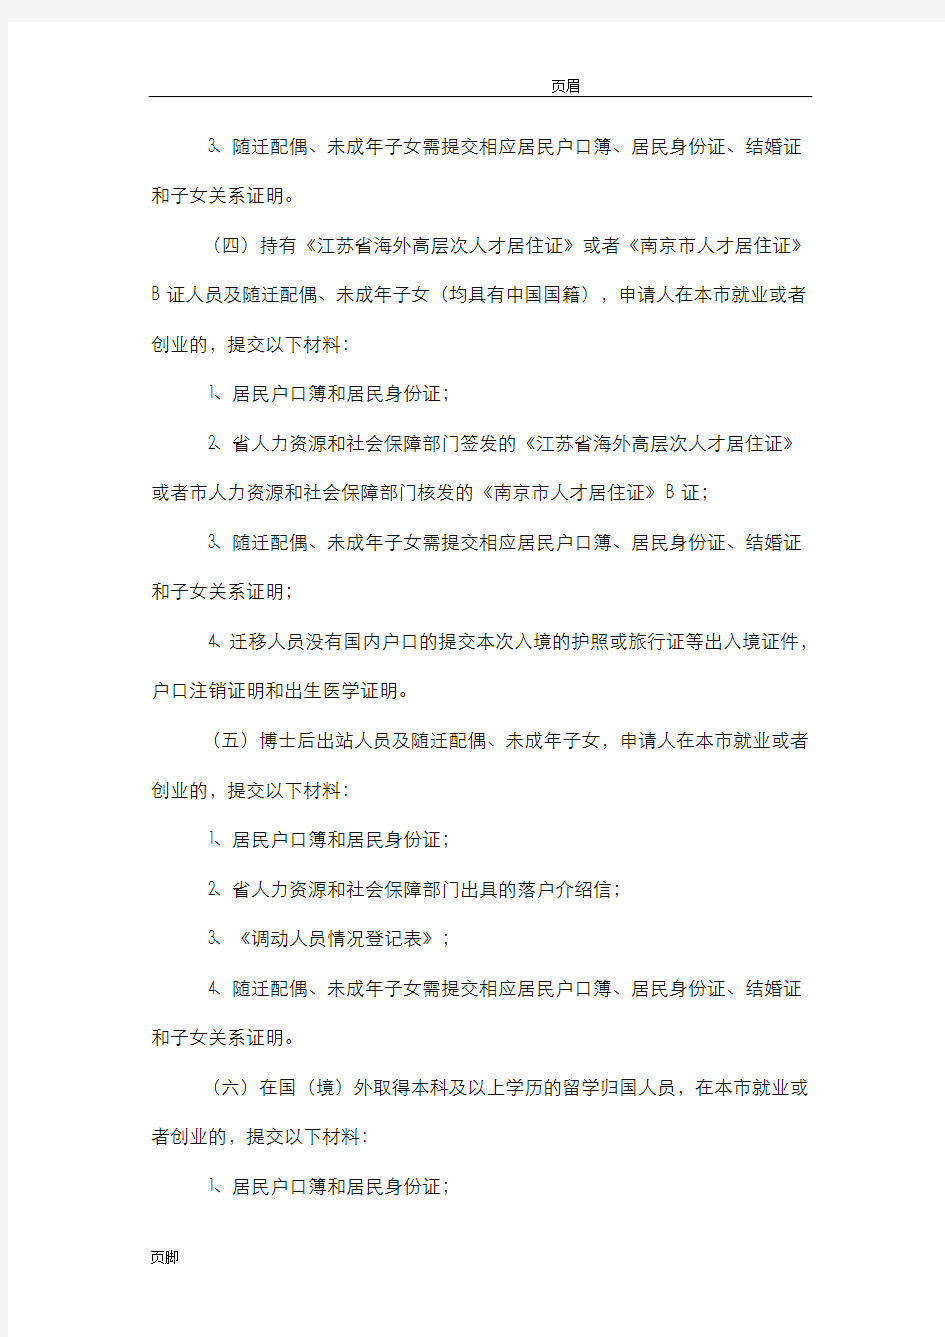 南京市户籍准入管理办法实施细则(试行)